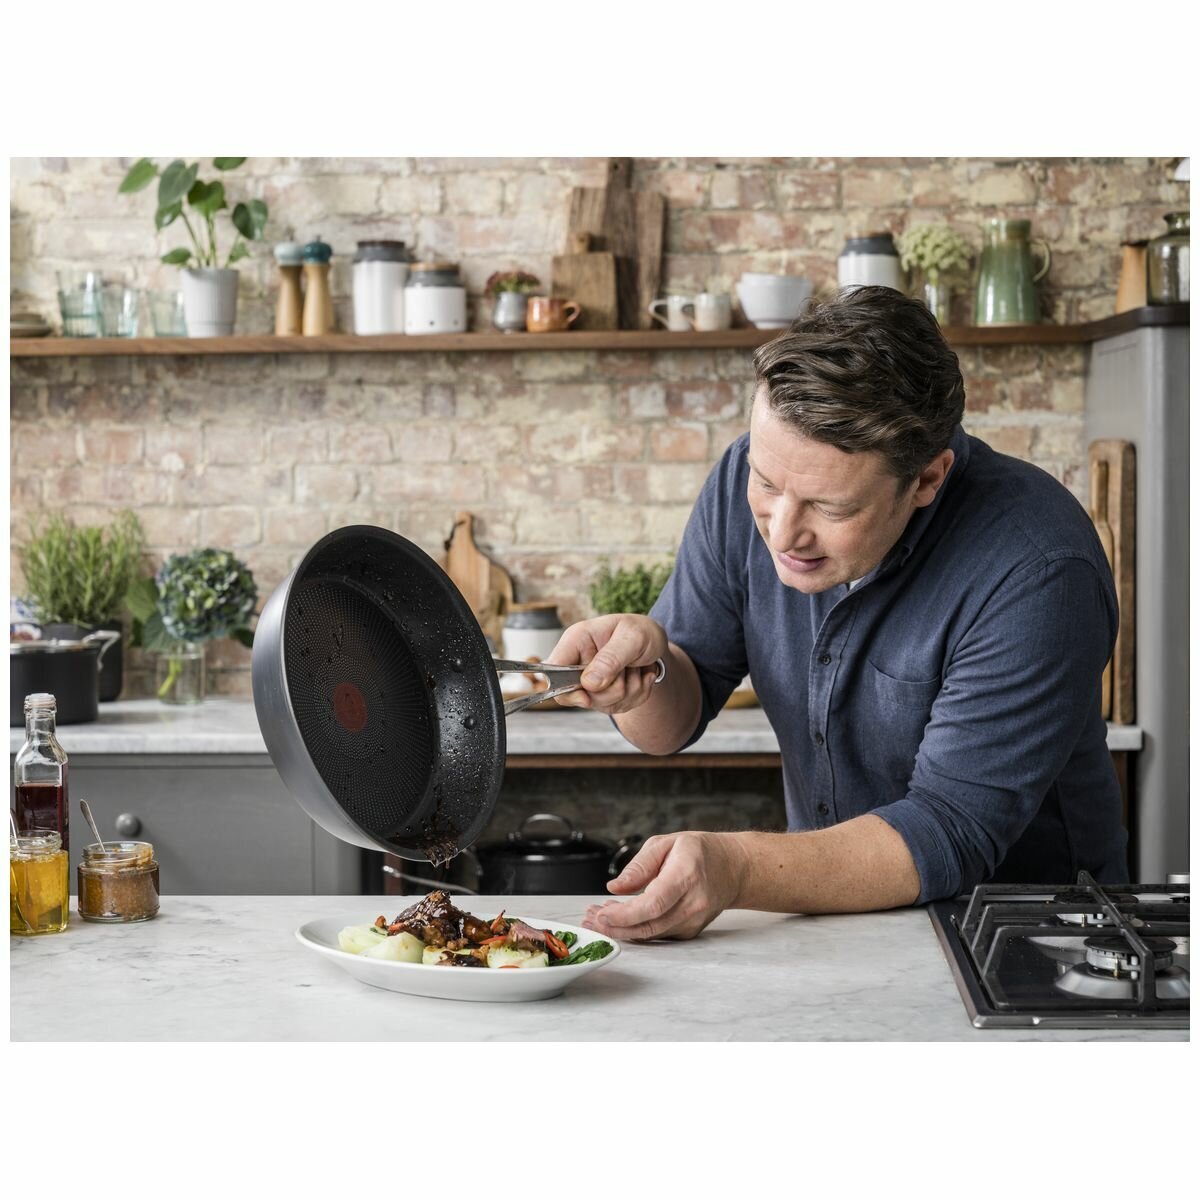 Buy Tefal Jamie Oliver 3 Piece Non Stick Saucepan Set, Pan sets